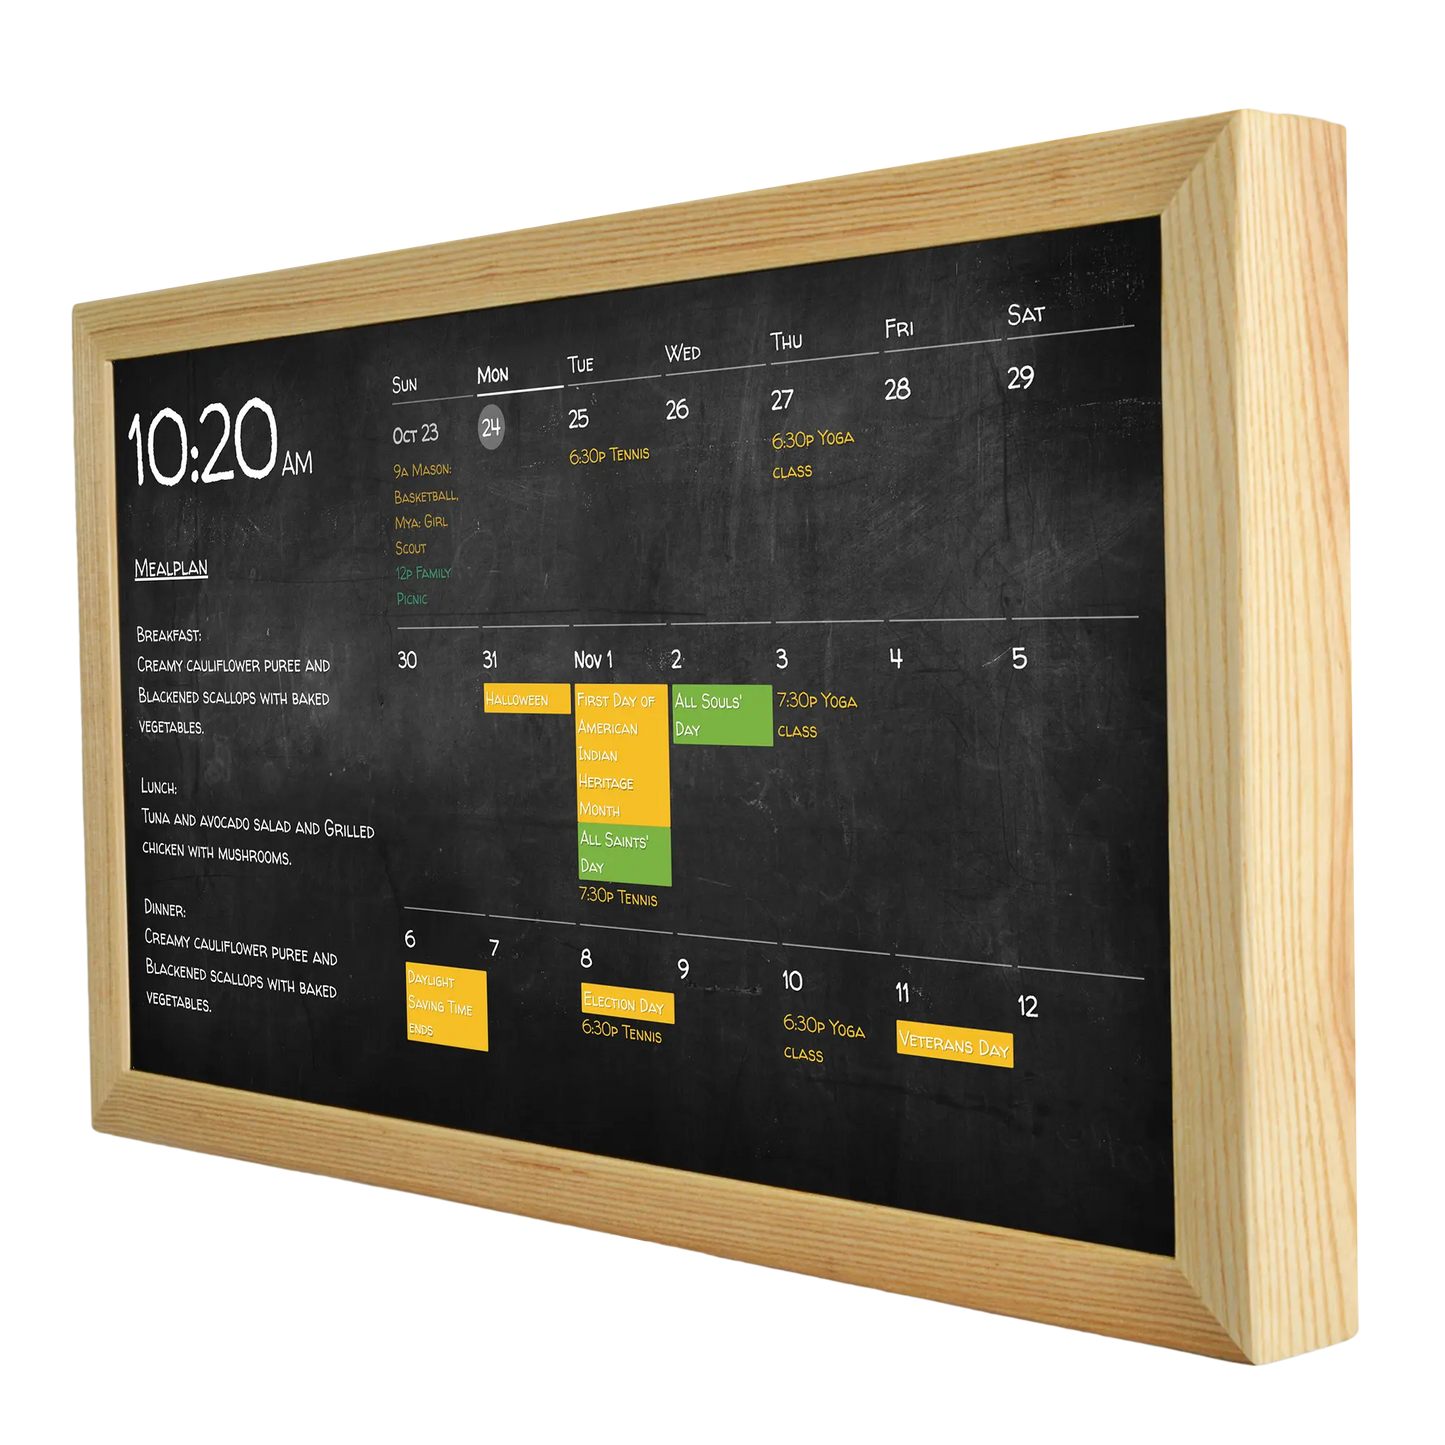 Digitale wandkalender 24 inch in houten frame